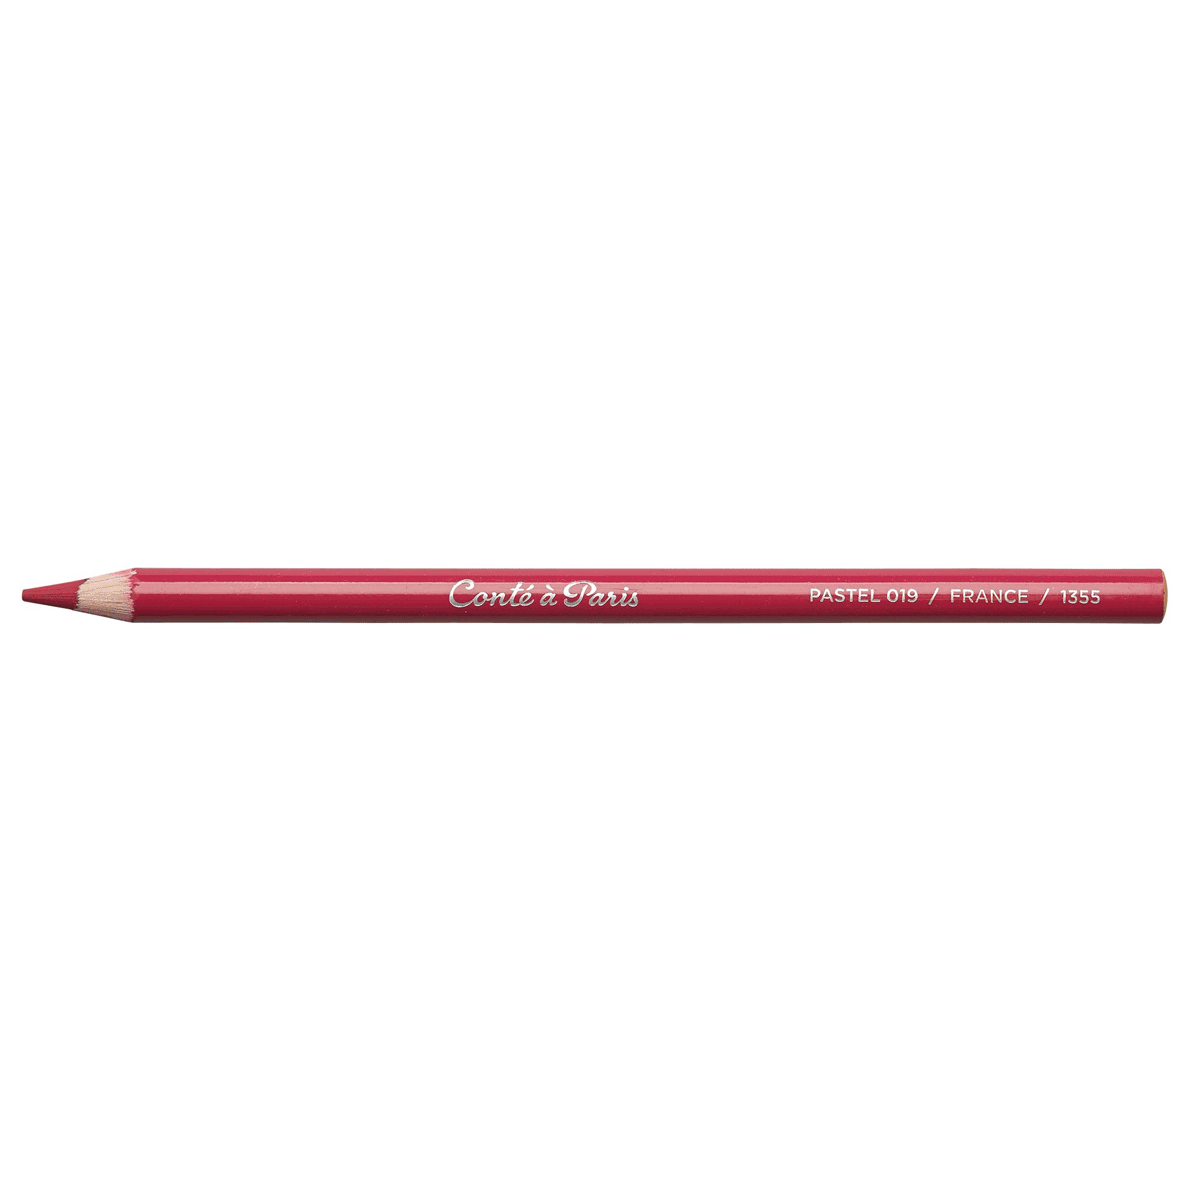 Conte Pastel Pencil - Purple - 019